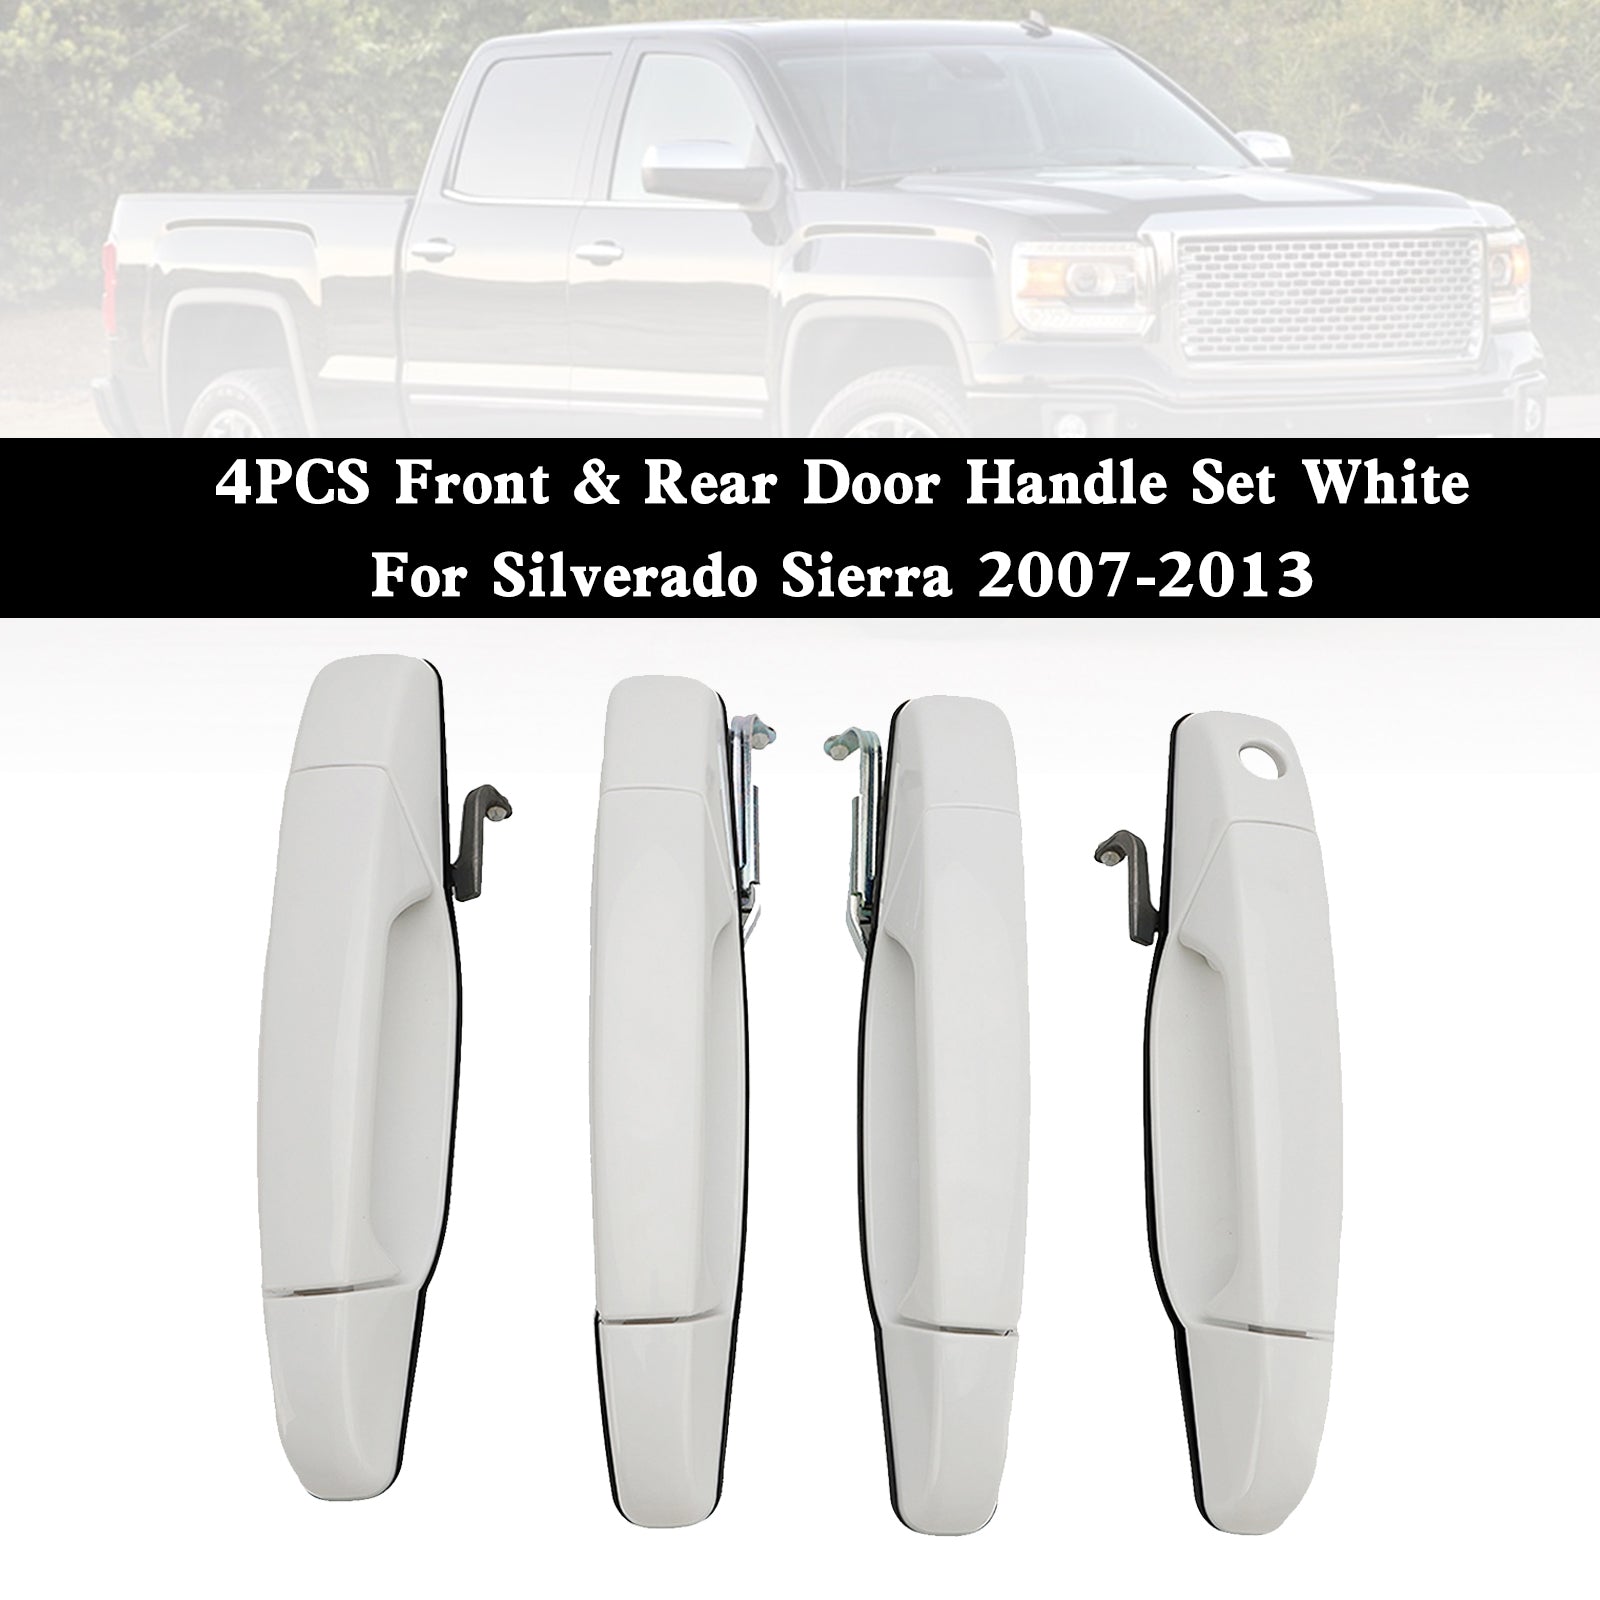 Silverado Sierra 2007-2013 Ensemble de 4 poignées de porte avant et arrière Blanc